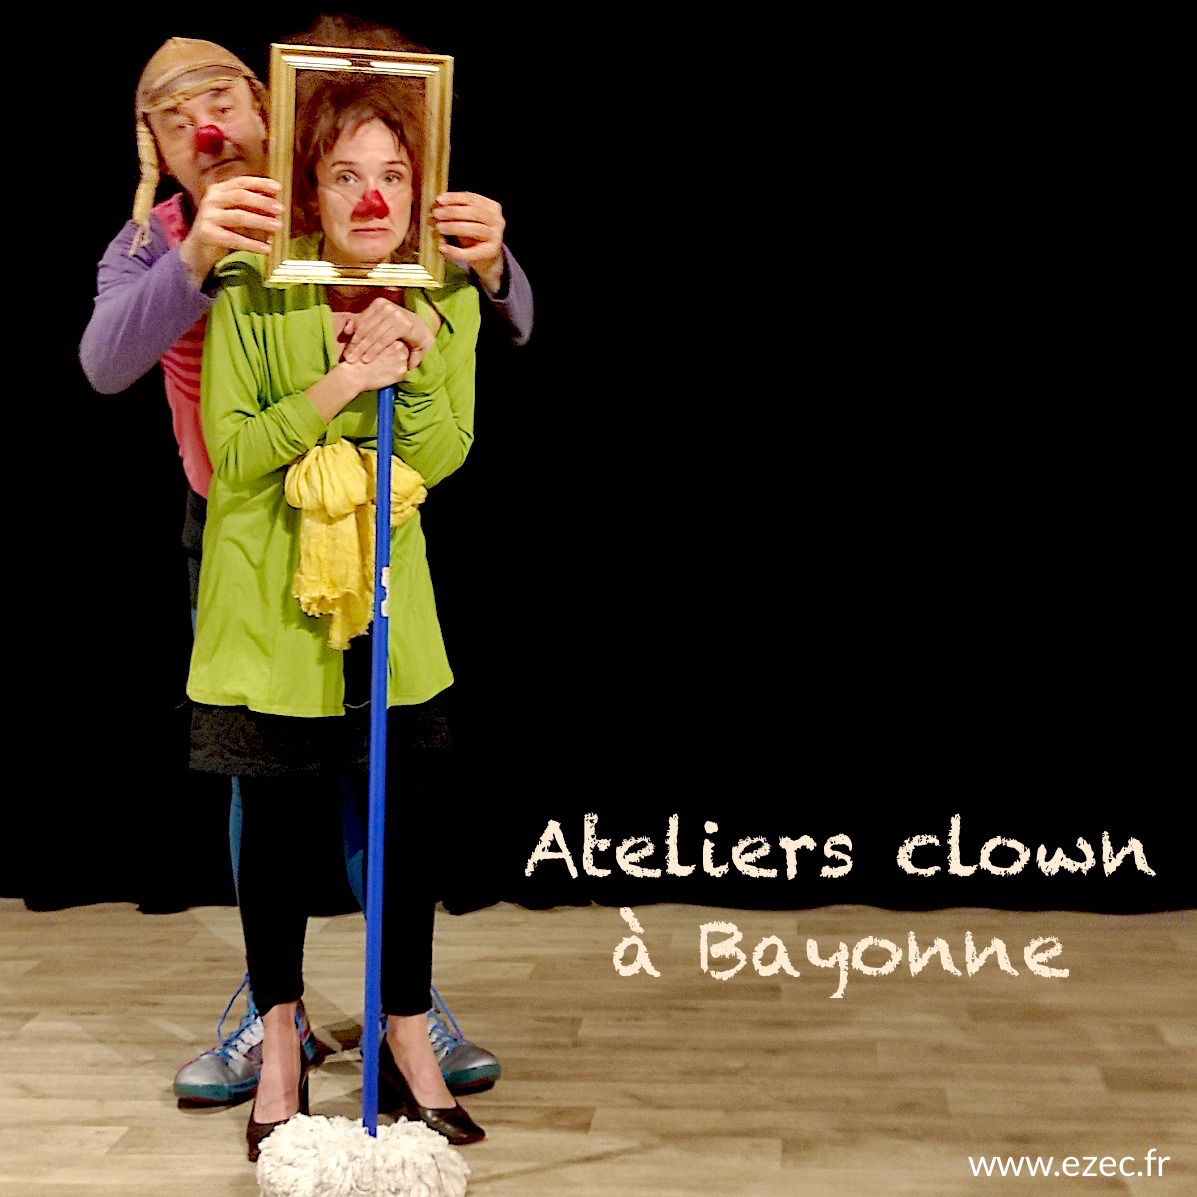 Chapka-clown, troupe proposant des stages et ateliers et spectacles sur Bayonne et alentours